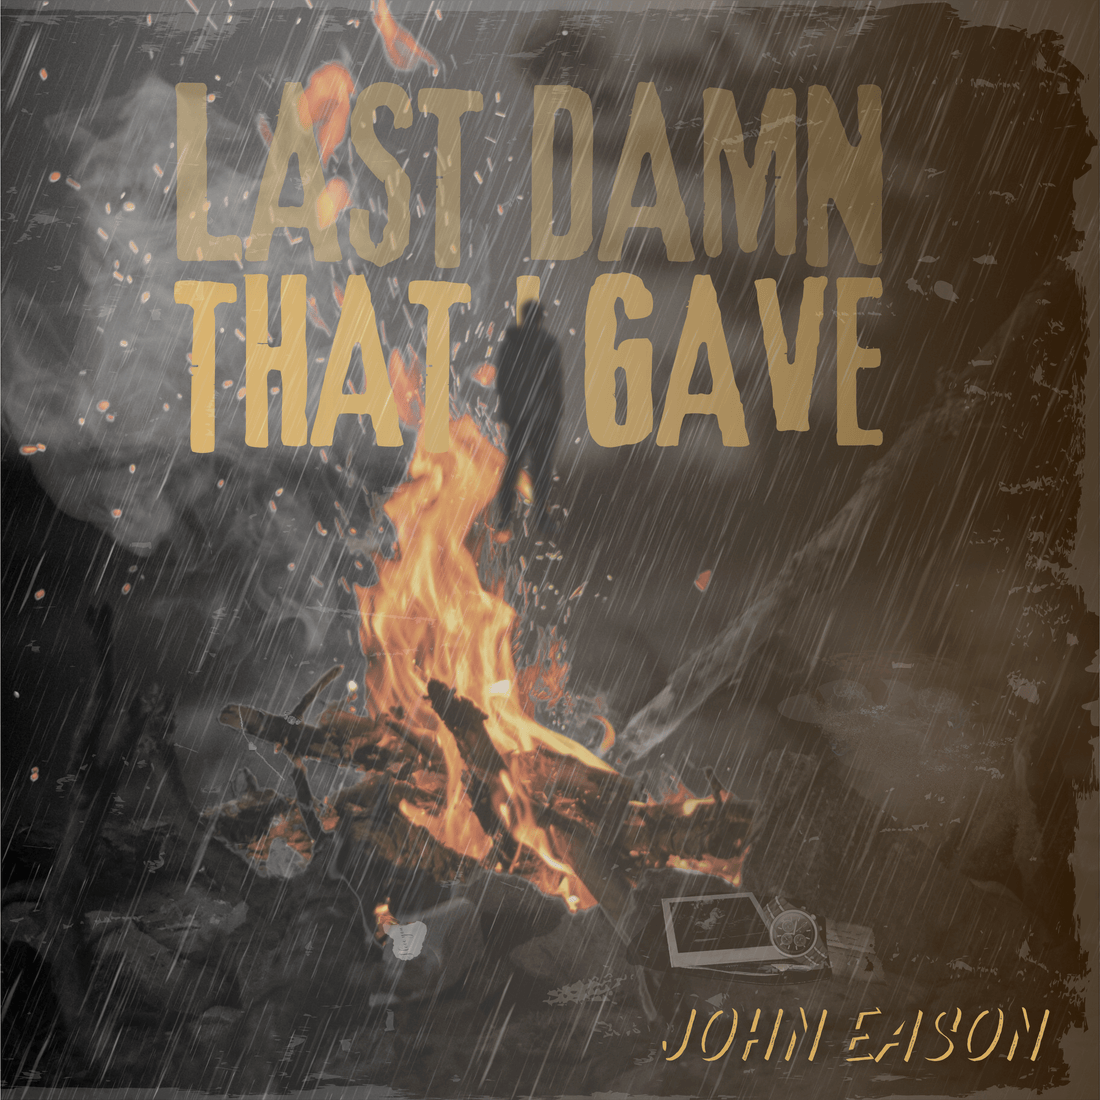 John Eason - “The Last Damn That I Gave”